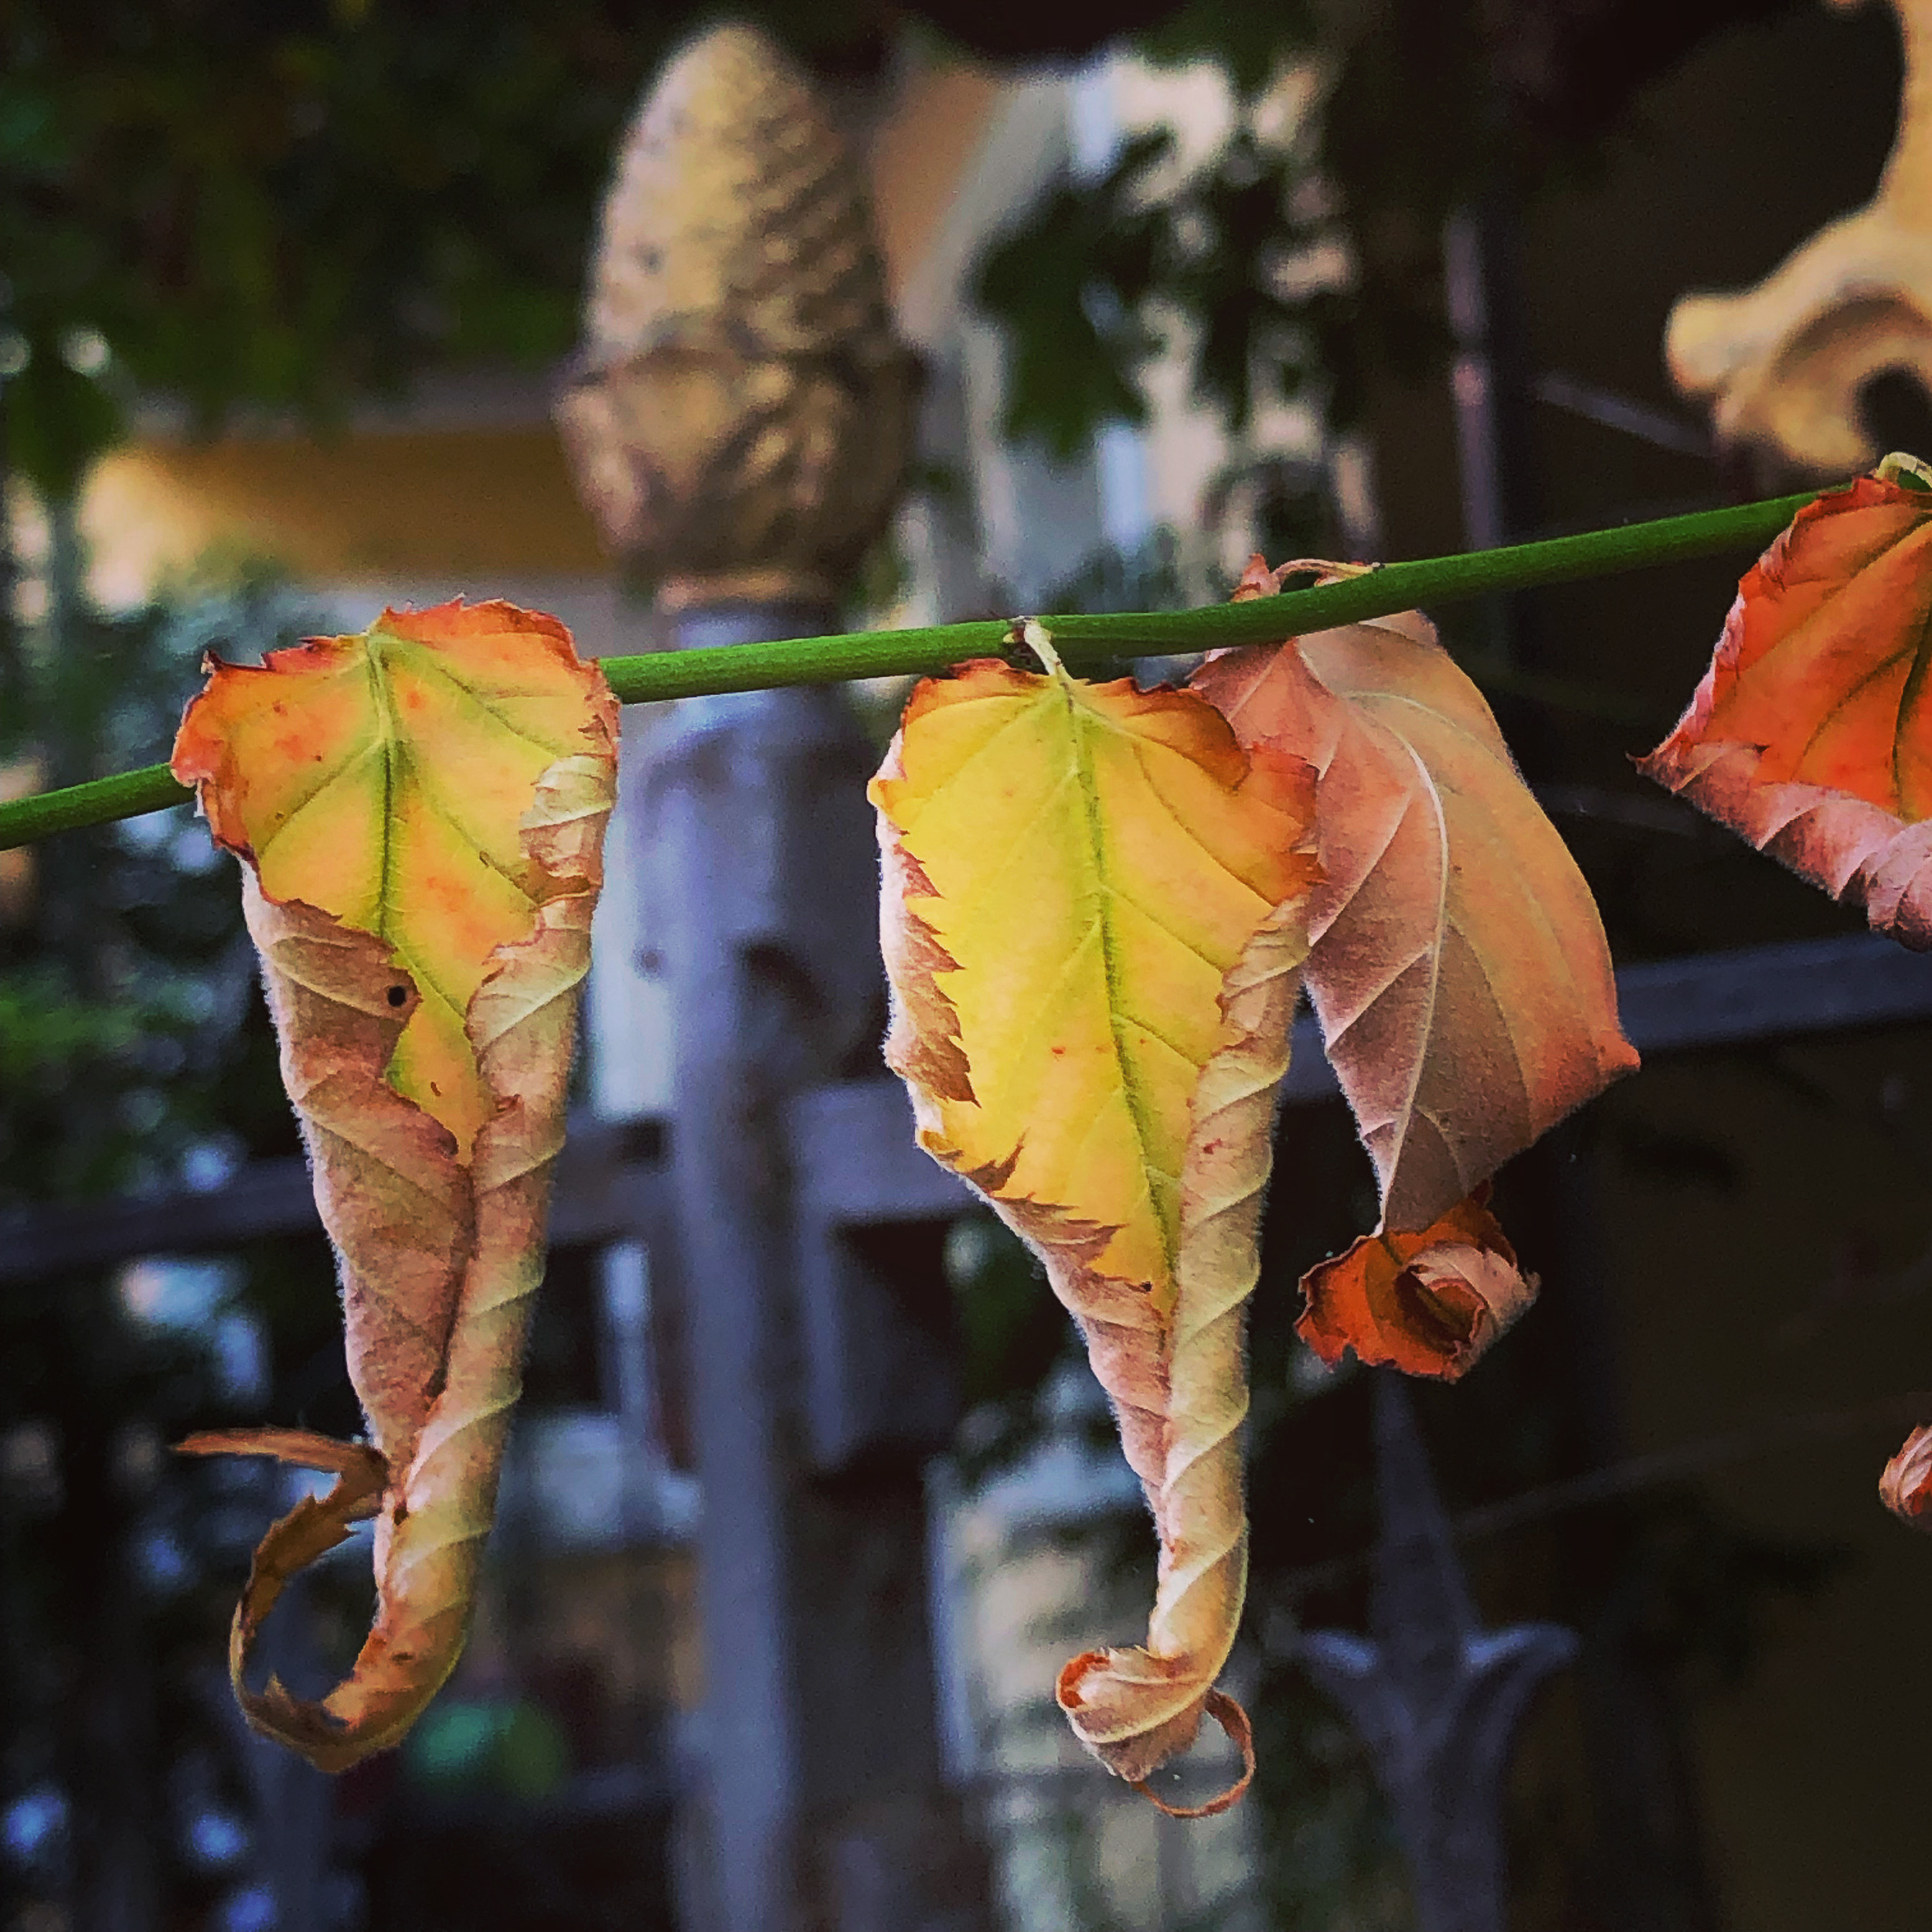 Dancing dry leaves